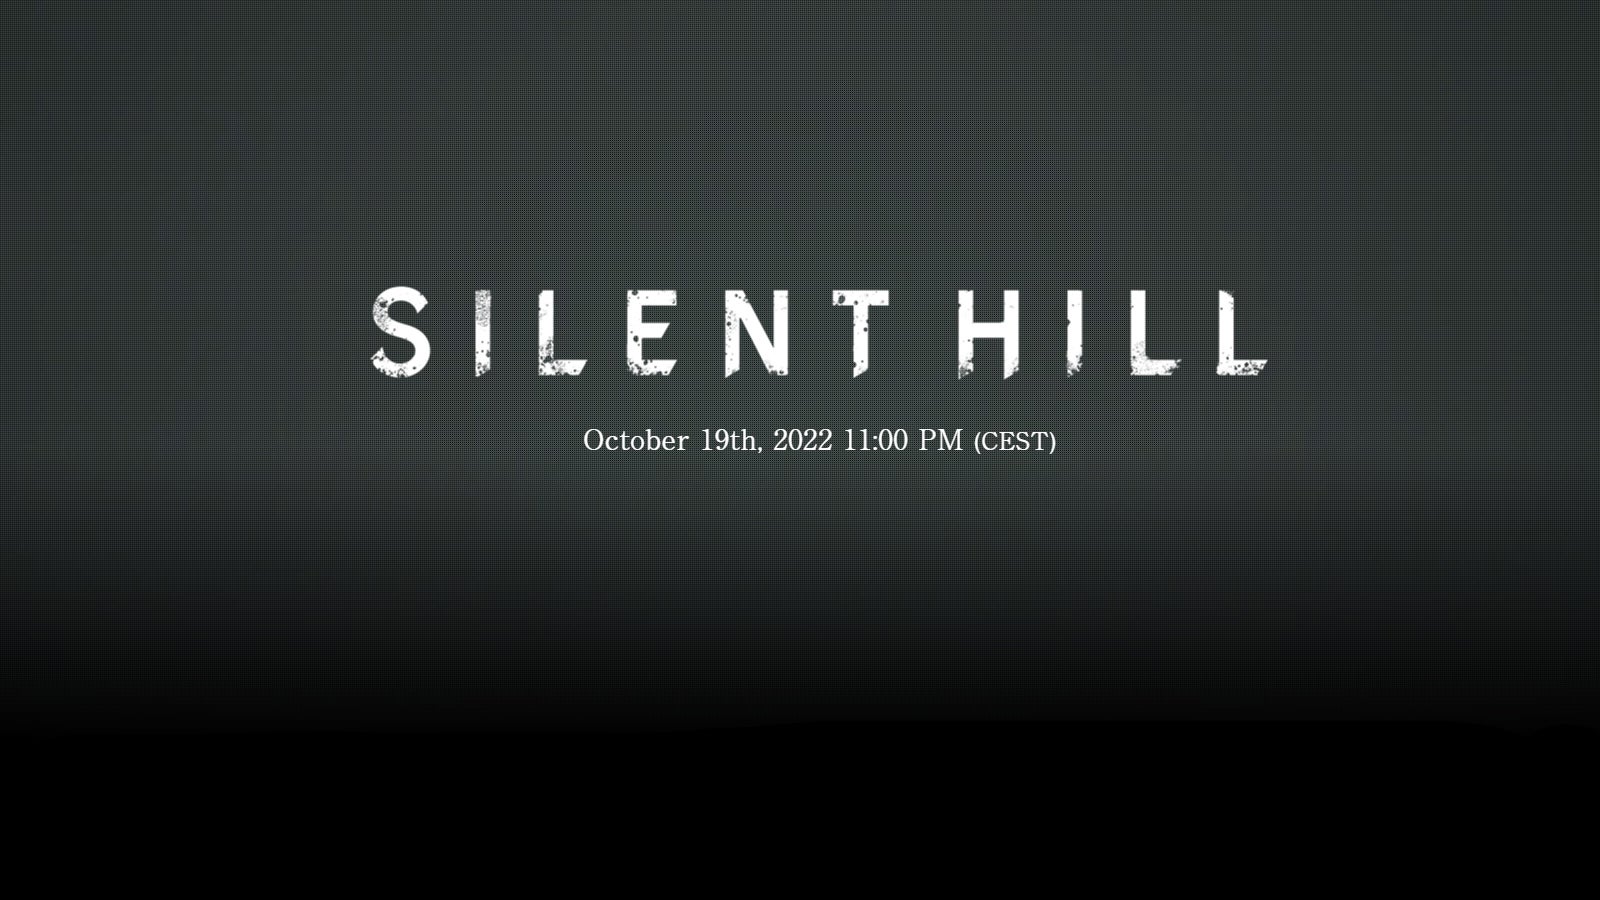 Imaginea site-ului Silent Hill teaser.